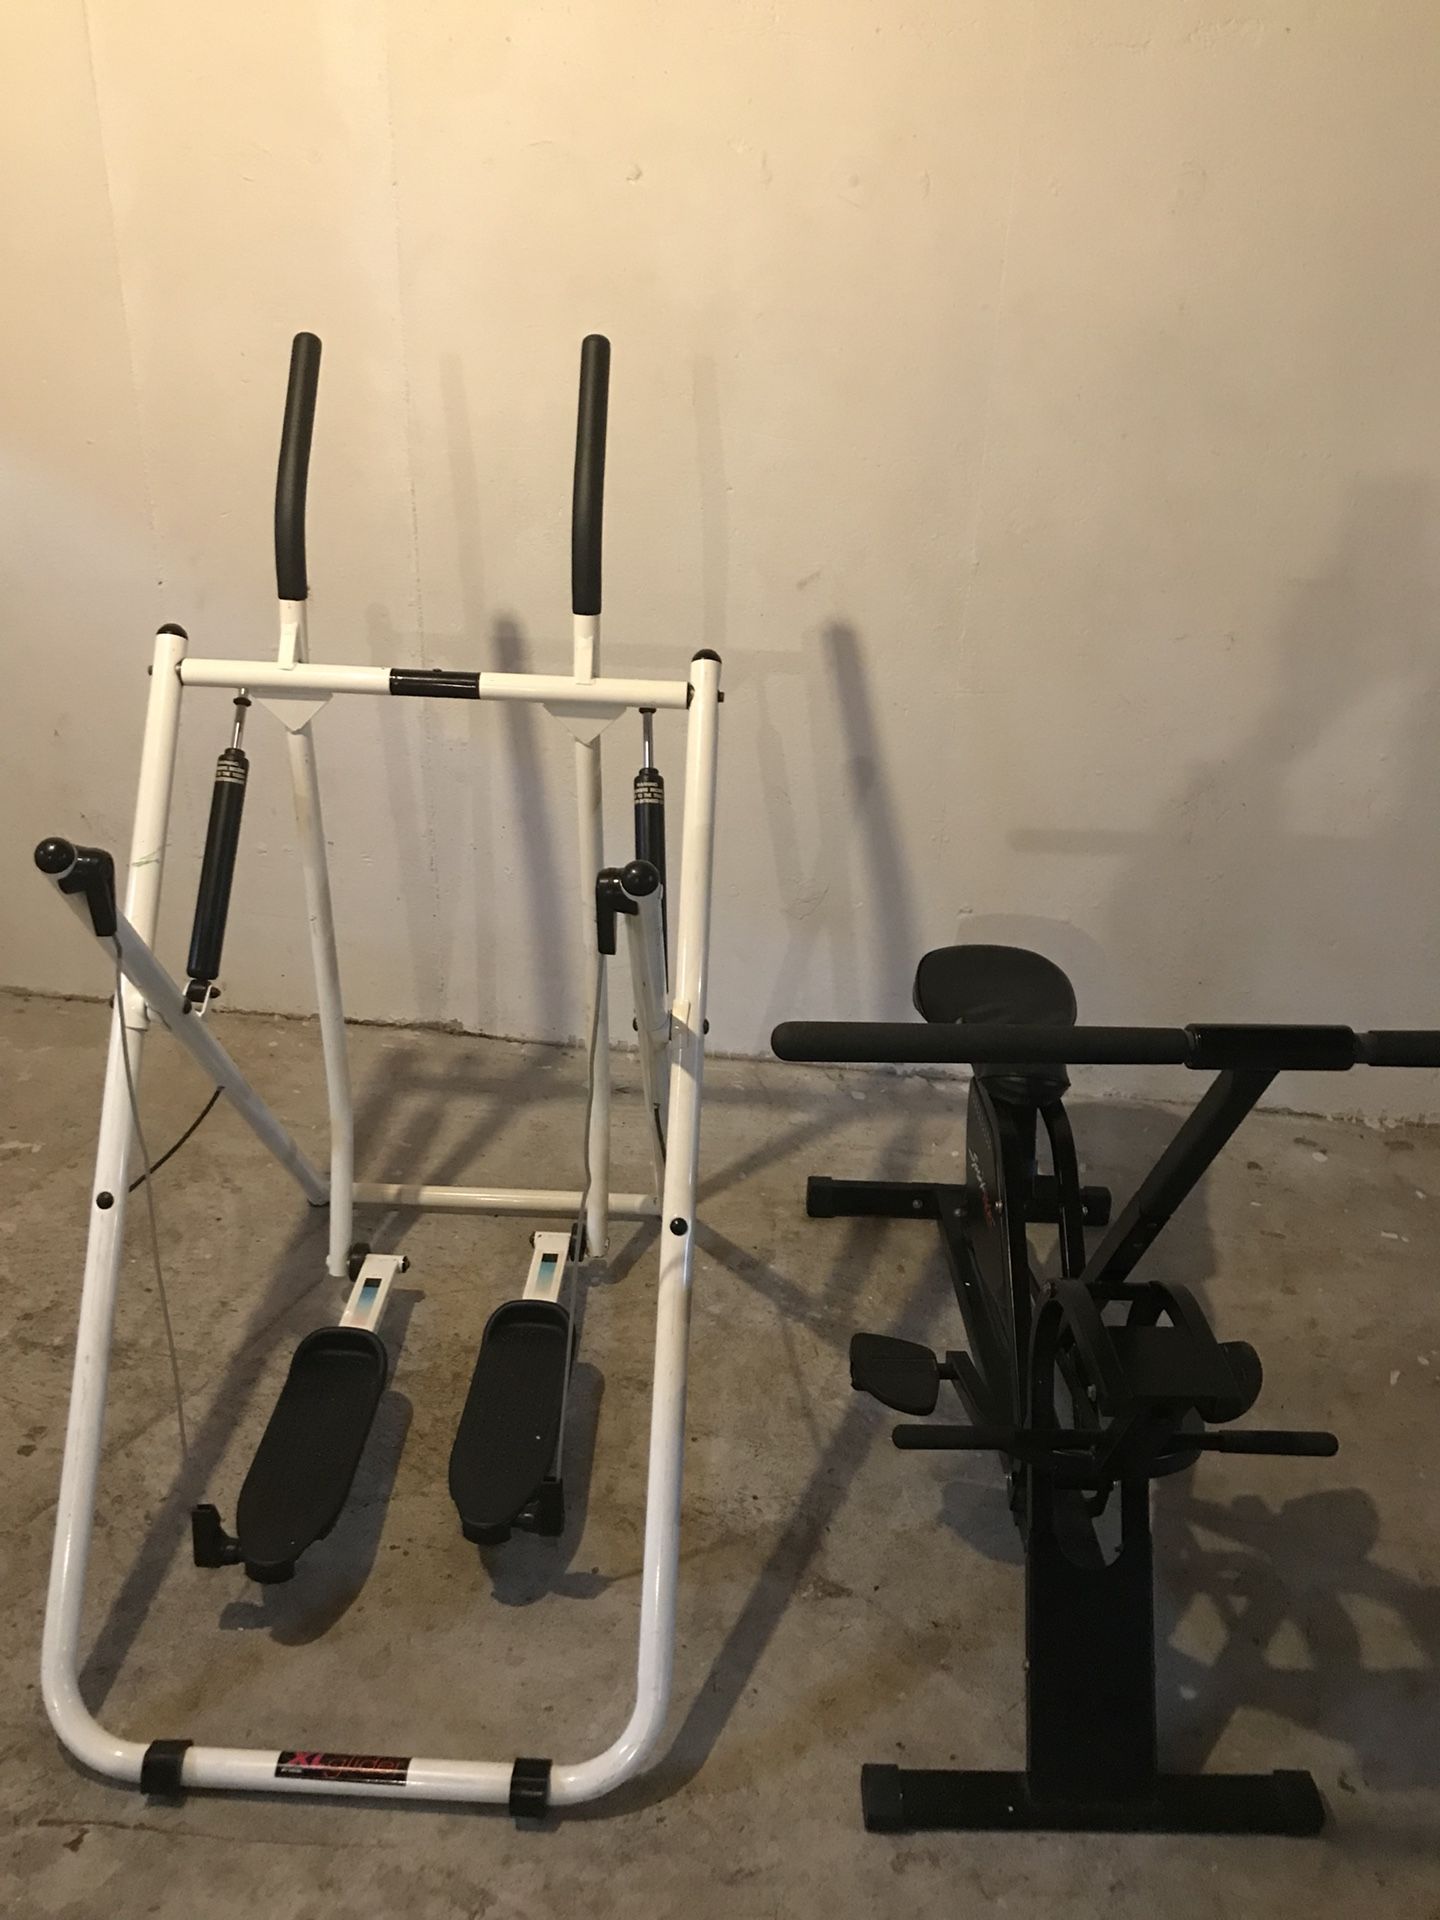 Exercise bikes